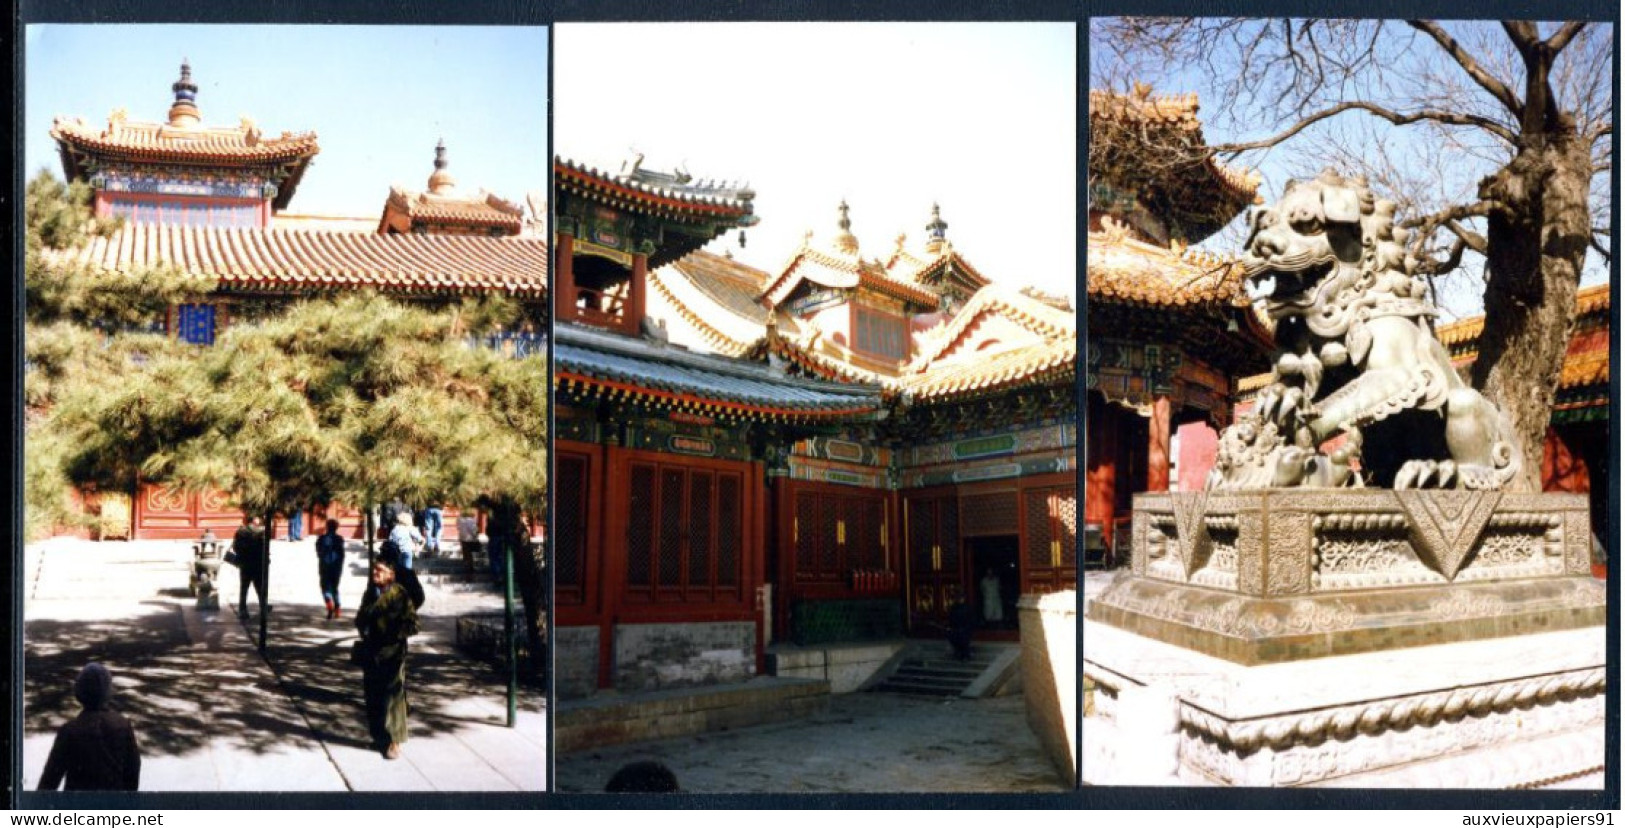 CHINE - PEKIN - 143 photos de mars 1987 - Monuments - coutumes - Exceptionnel (voir descriptif) - Année du LIEVRE